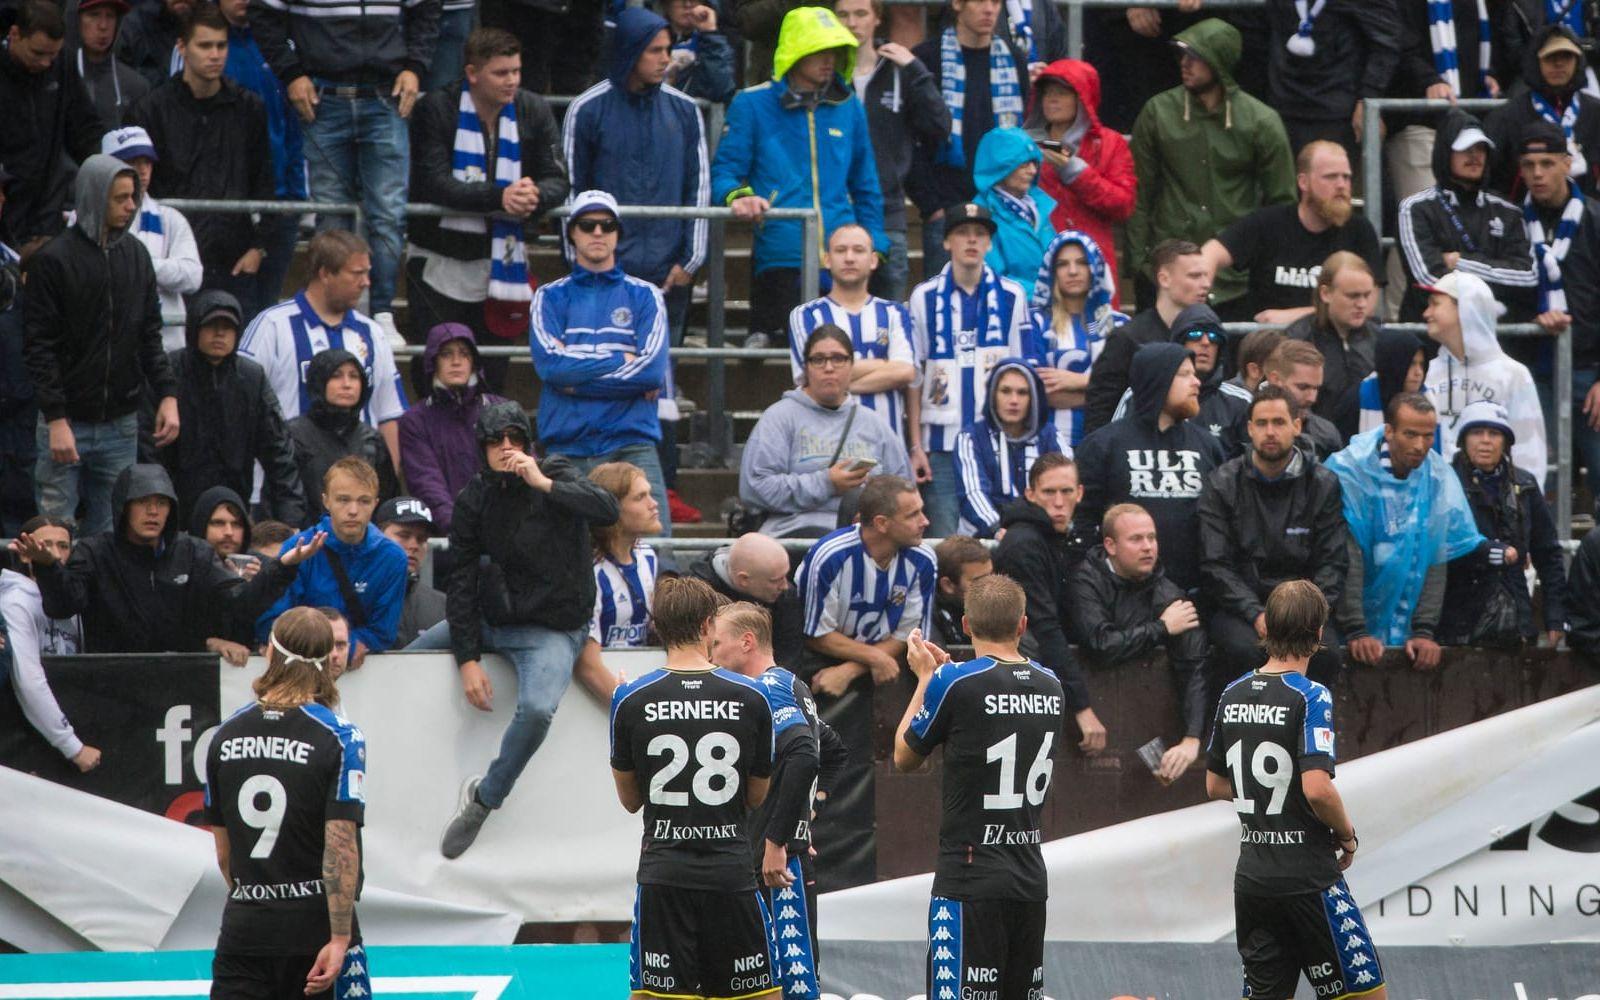 Flera av spelarna tog sig ett snack med fansen efter förlusten mot Örebro. Bild: Bildbyrån